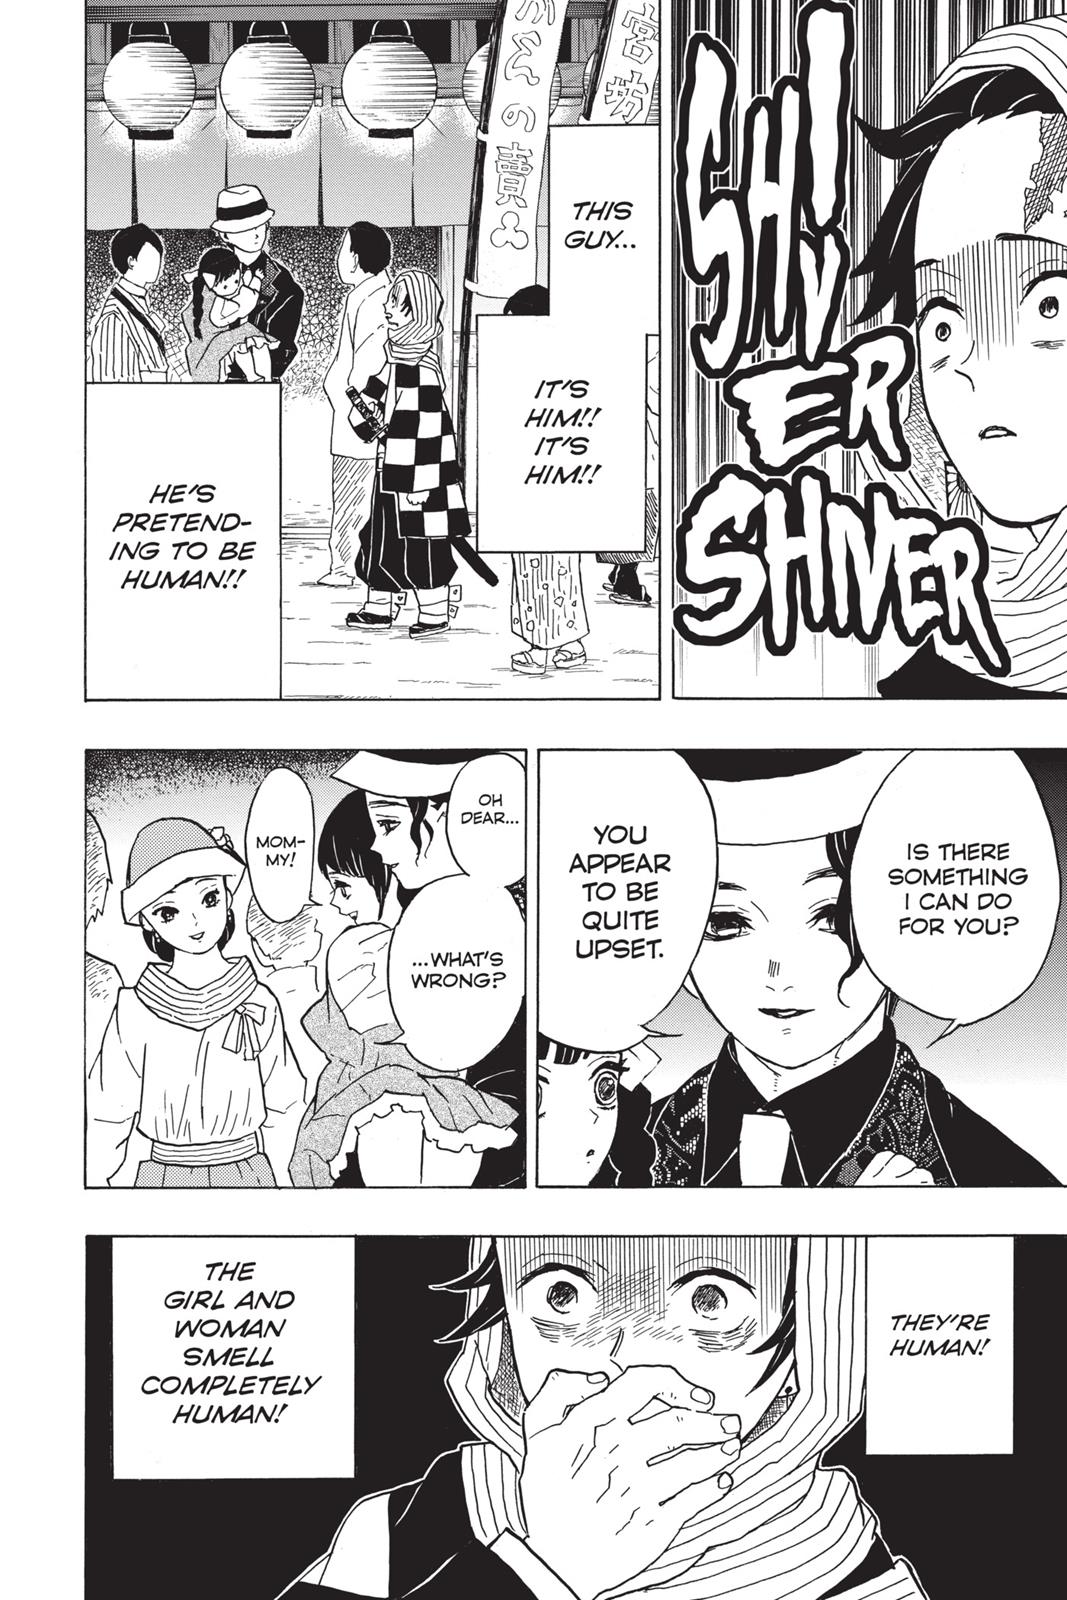 Demon Slayer Manga Manga Chapter - 13 - image 8